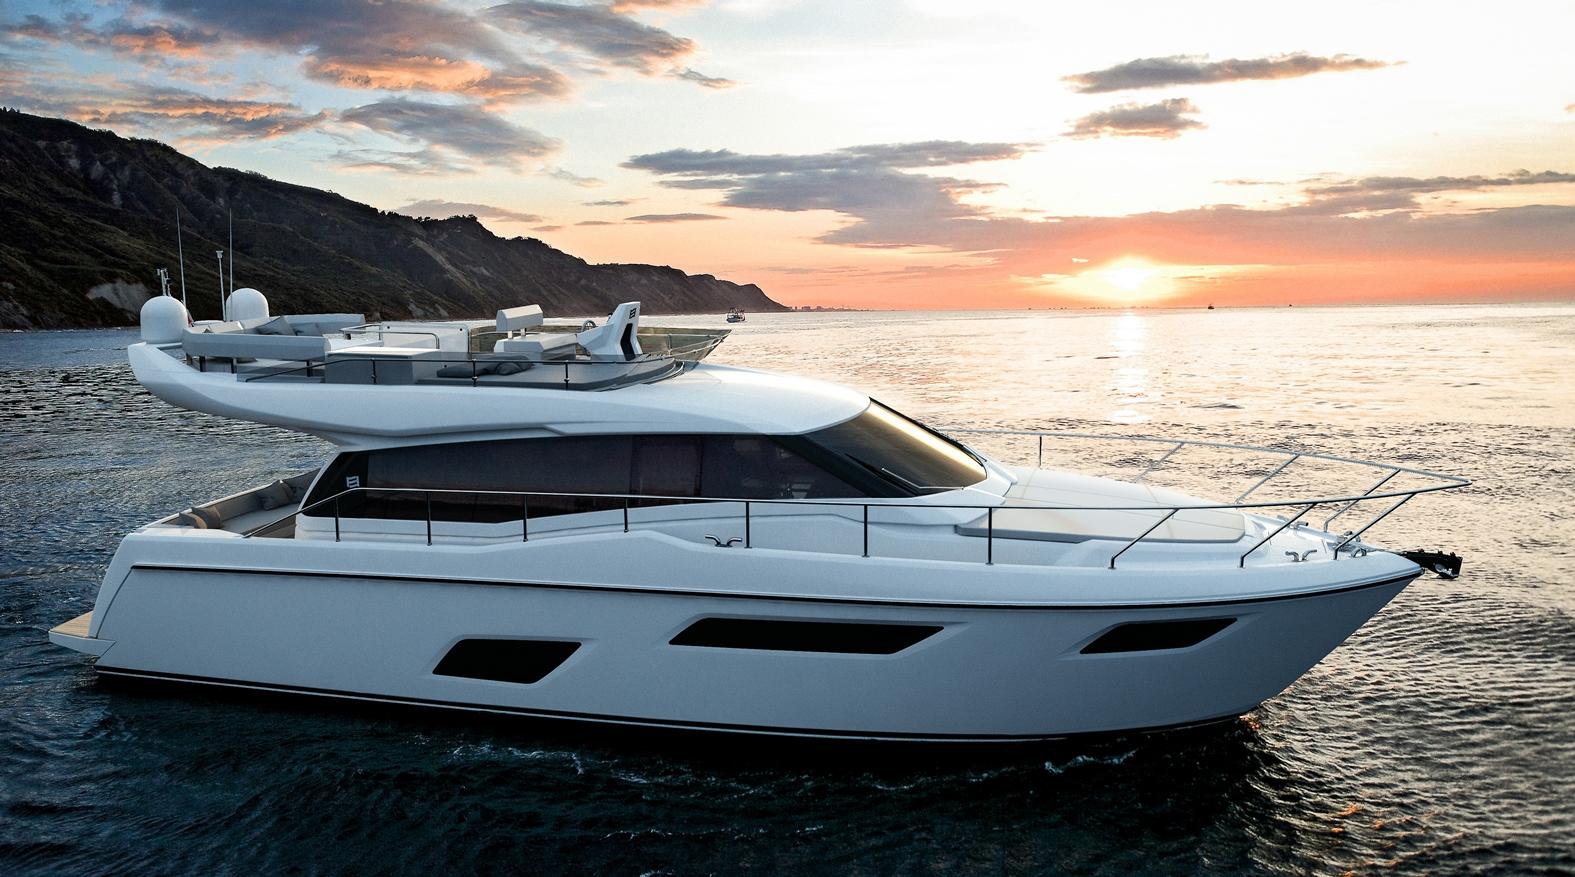 Il nuovo modello d'ingresso alla gamma Ferretti Yacht, il FY 450